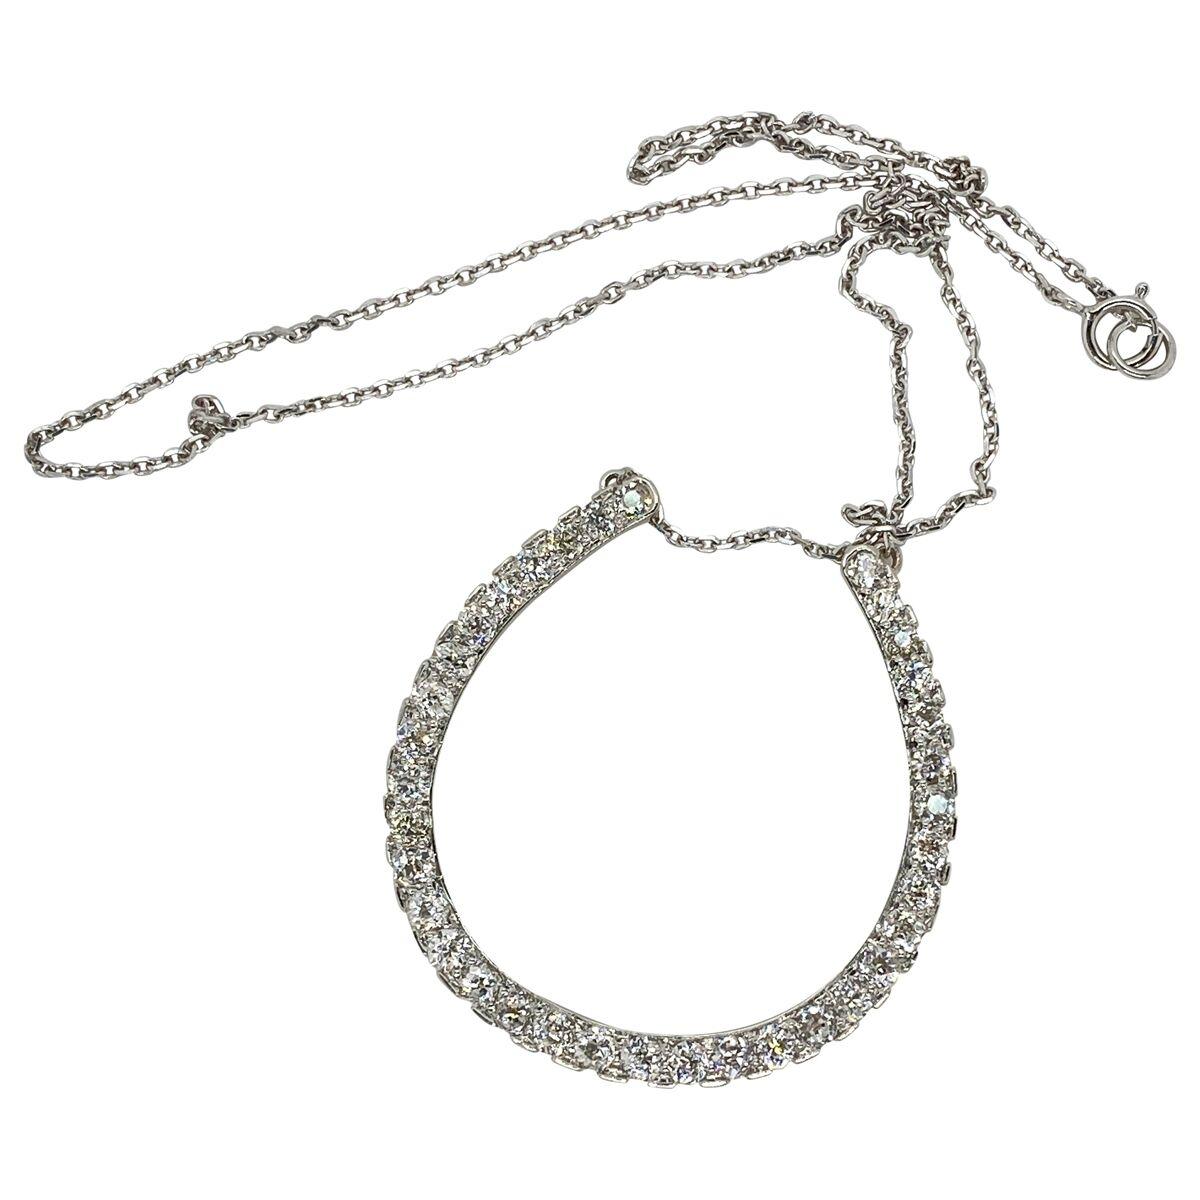 14 karat gold horseshoe necklace